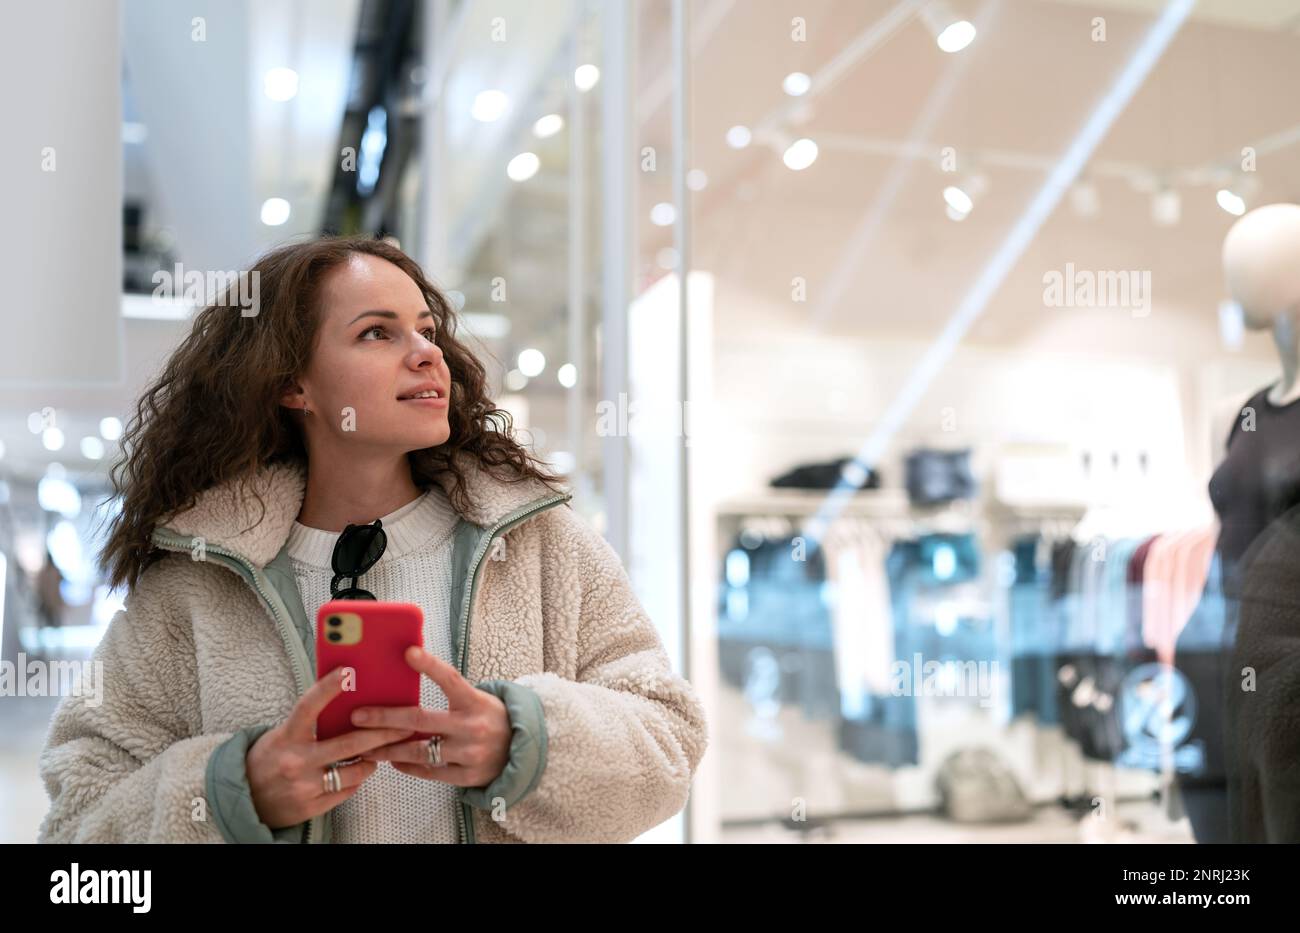 Eine junge Frau, die durch das Einkaufszentrum läuft, auf ein Fenster von Modegeschäften schaut und ihr Handy in der Hand hält. Stockfoto